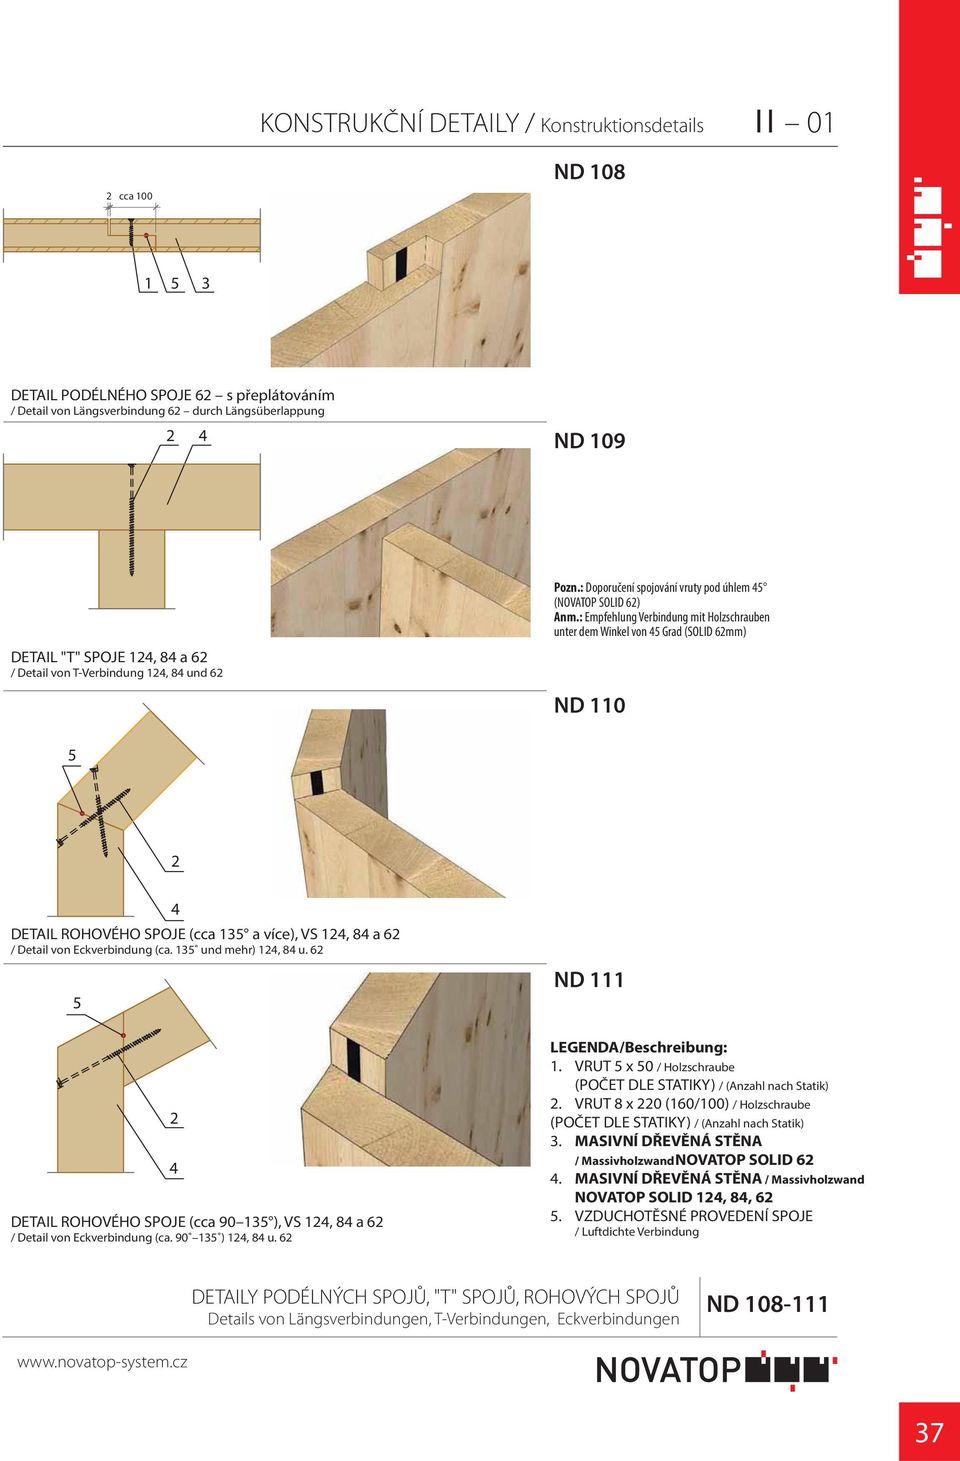 : Empfehlung Verbindung mit Holzschrauben unter dem Winkel von Grad (SOLID mm) ND 0 DETAIL ROHOVÉHO SPOJE (cca a více), VS, 8 a / Detail von Eckverbindung (ca. und mehr), 8 u.